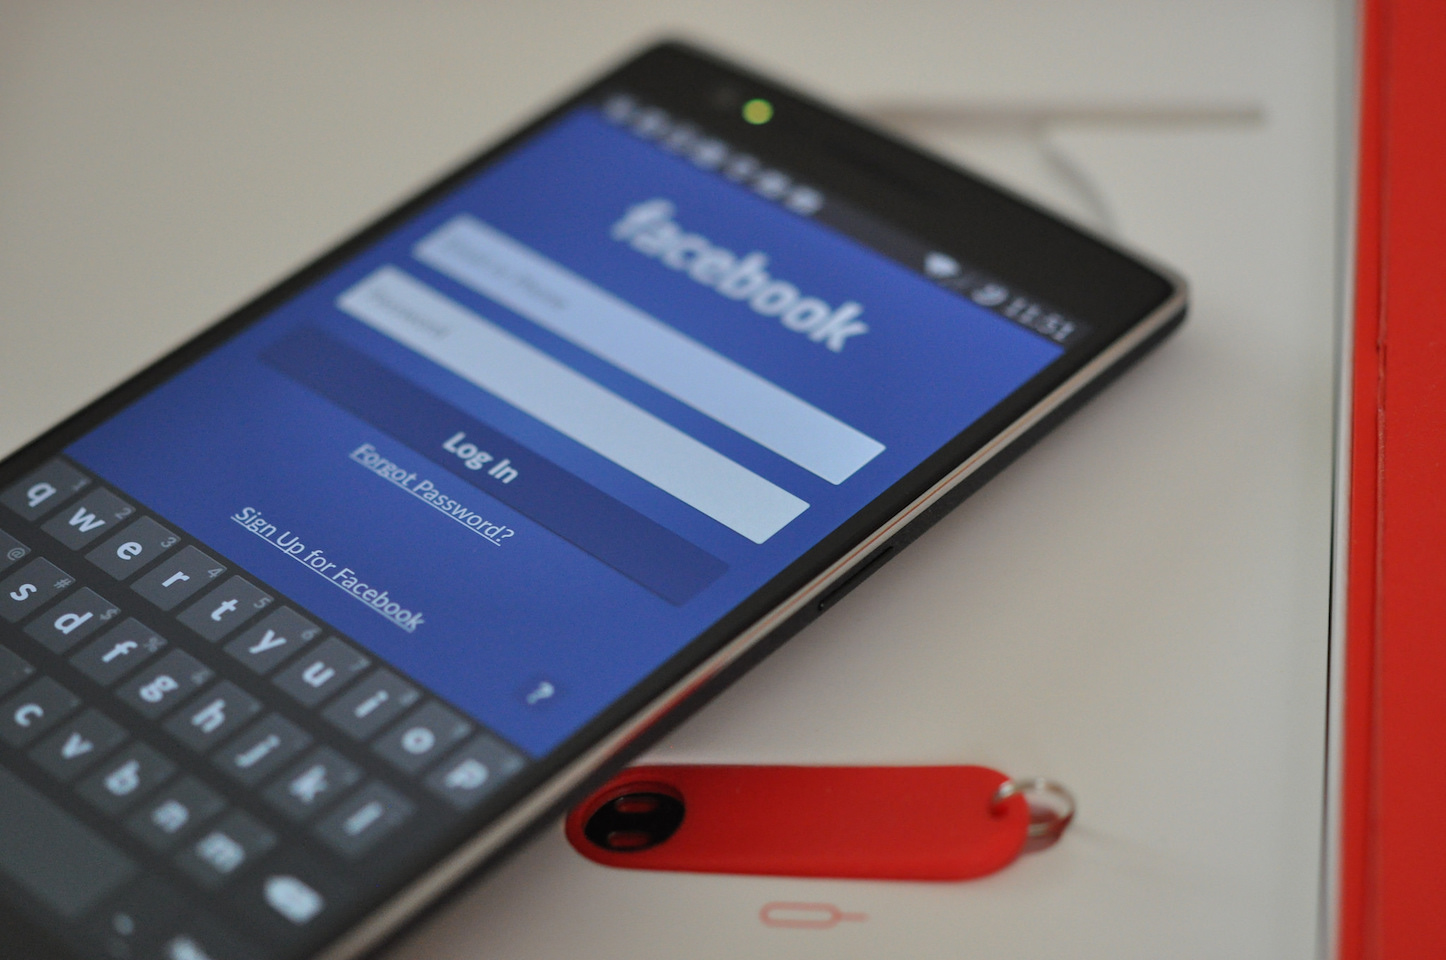 facebook-android-app.jpg